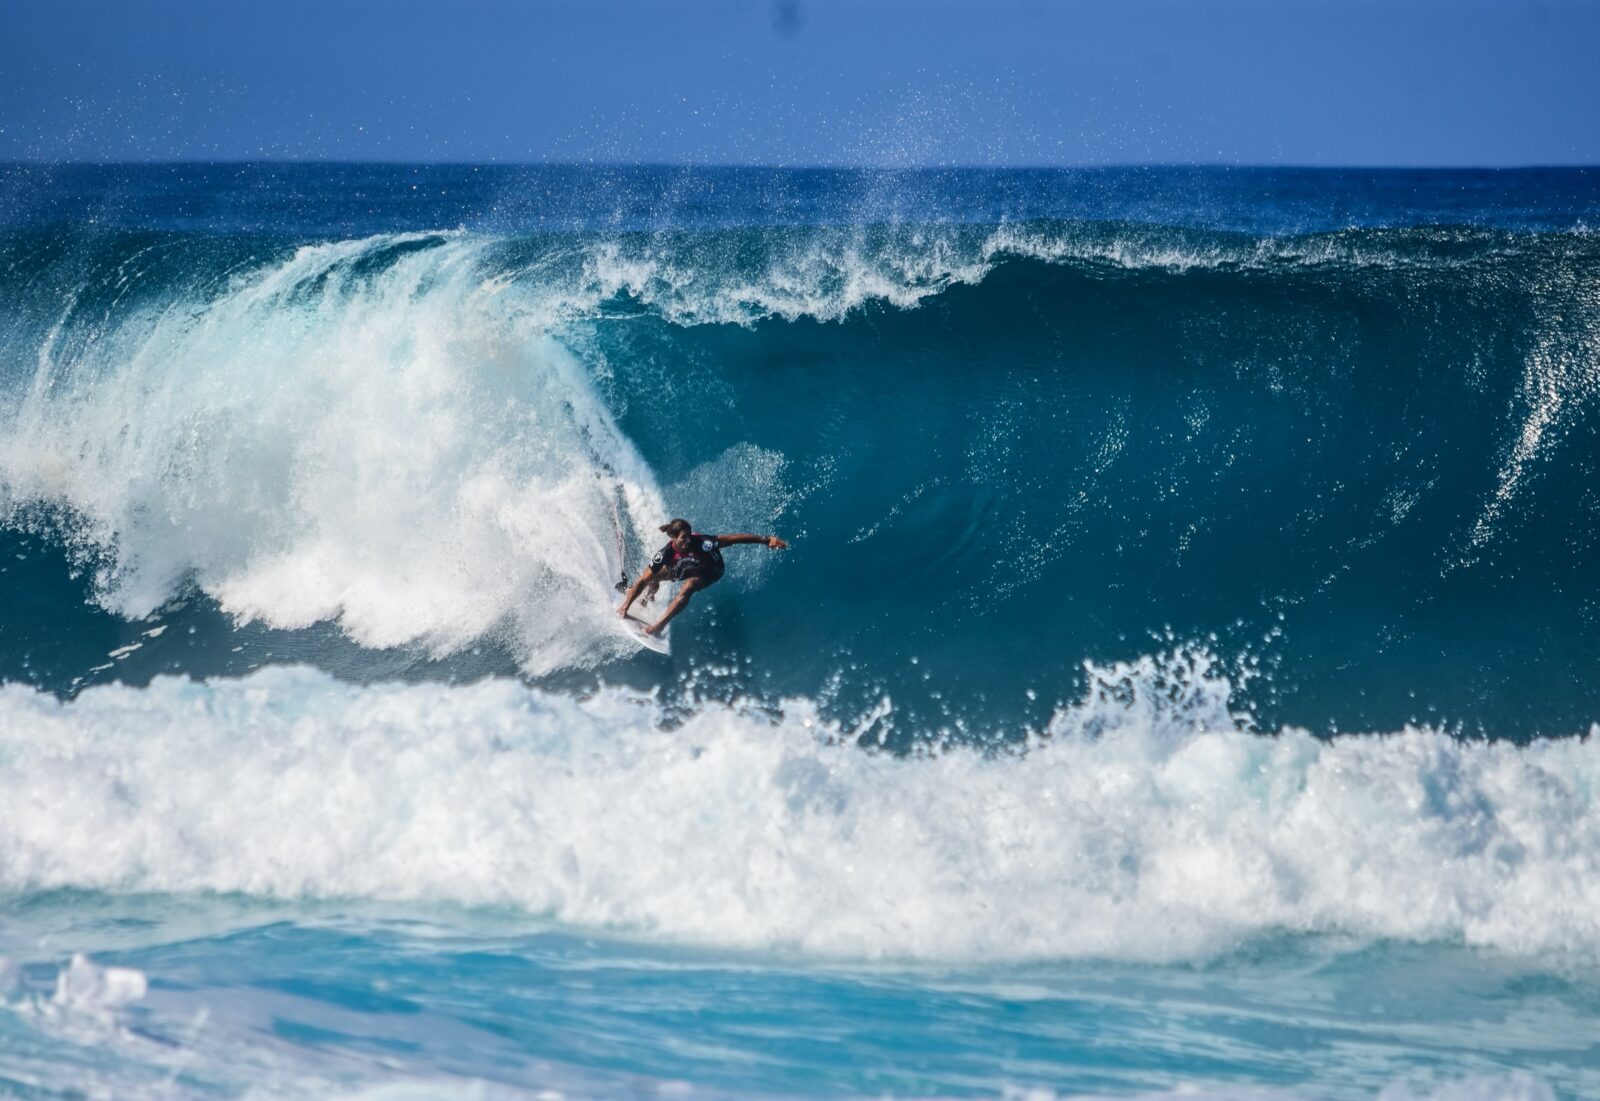 Surfer riding a massive blue wave